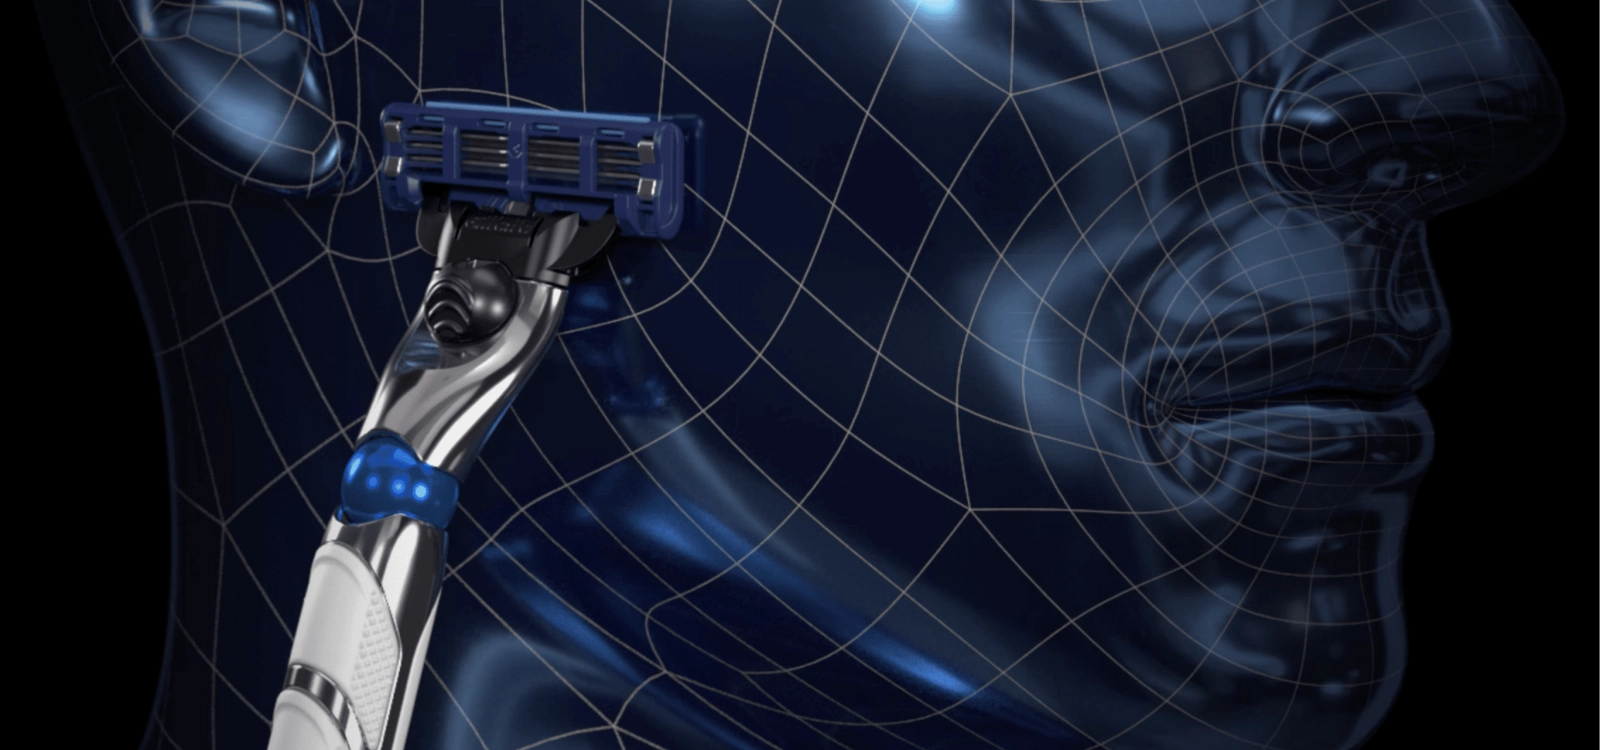 MACH3 Turbo 3D tıraş makinesi, dış hatlara uyum sağlayan bir 3D hareketli tutamağa sahiptir